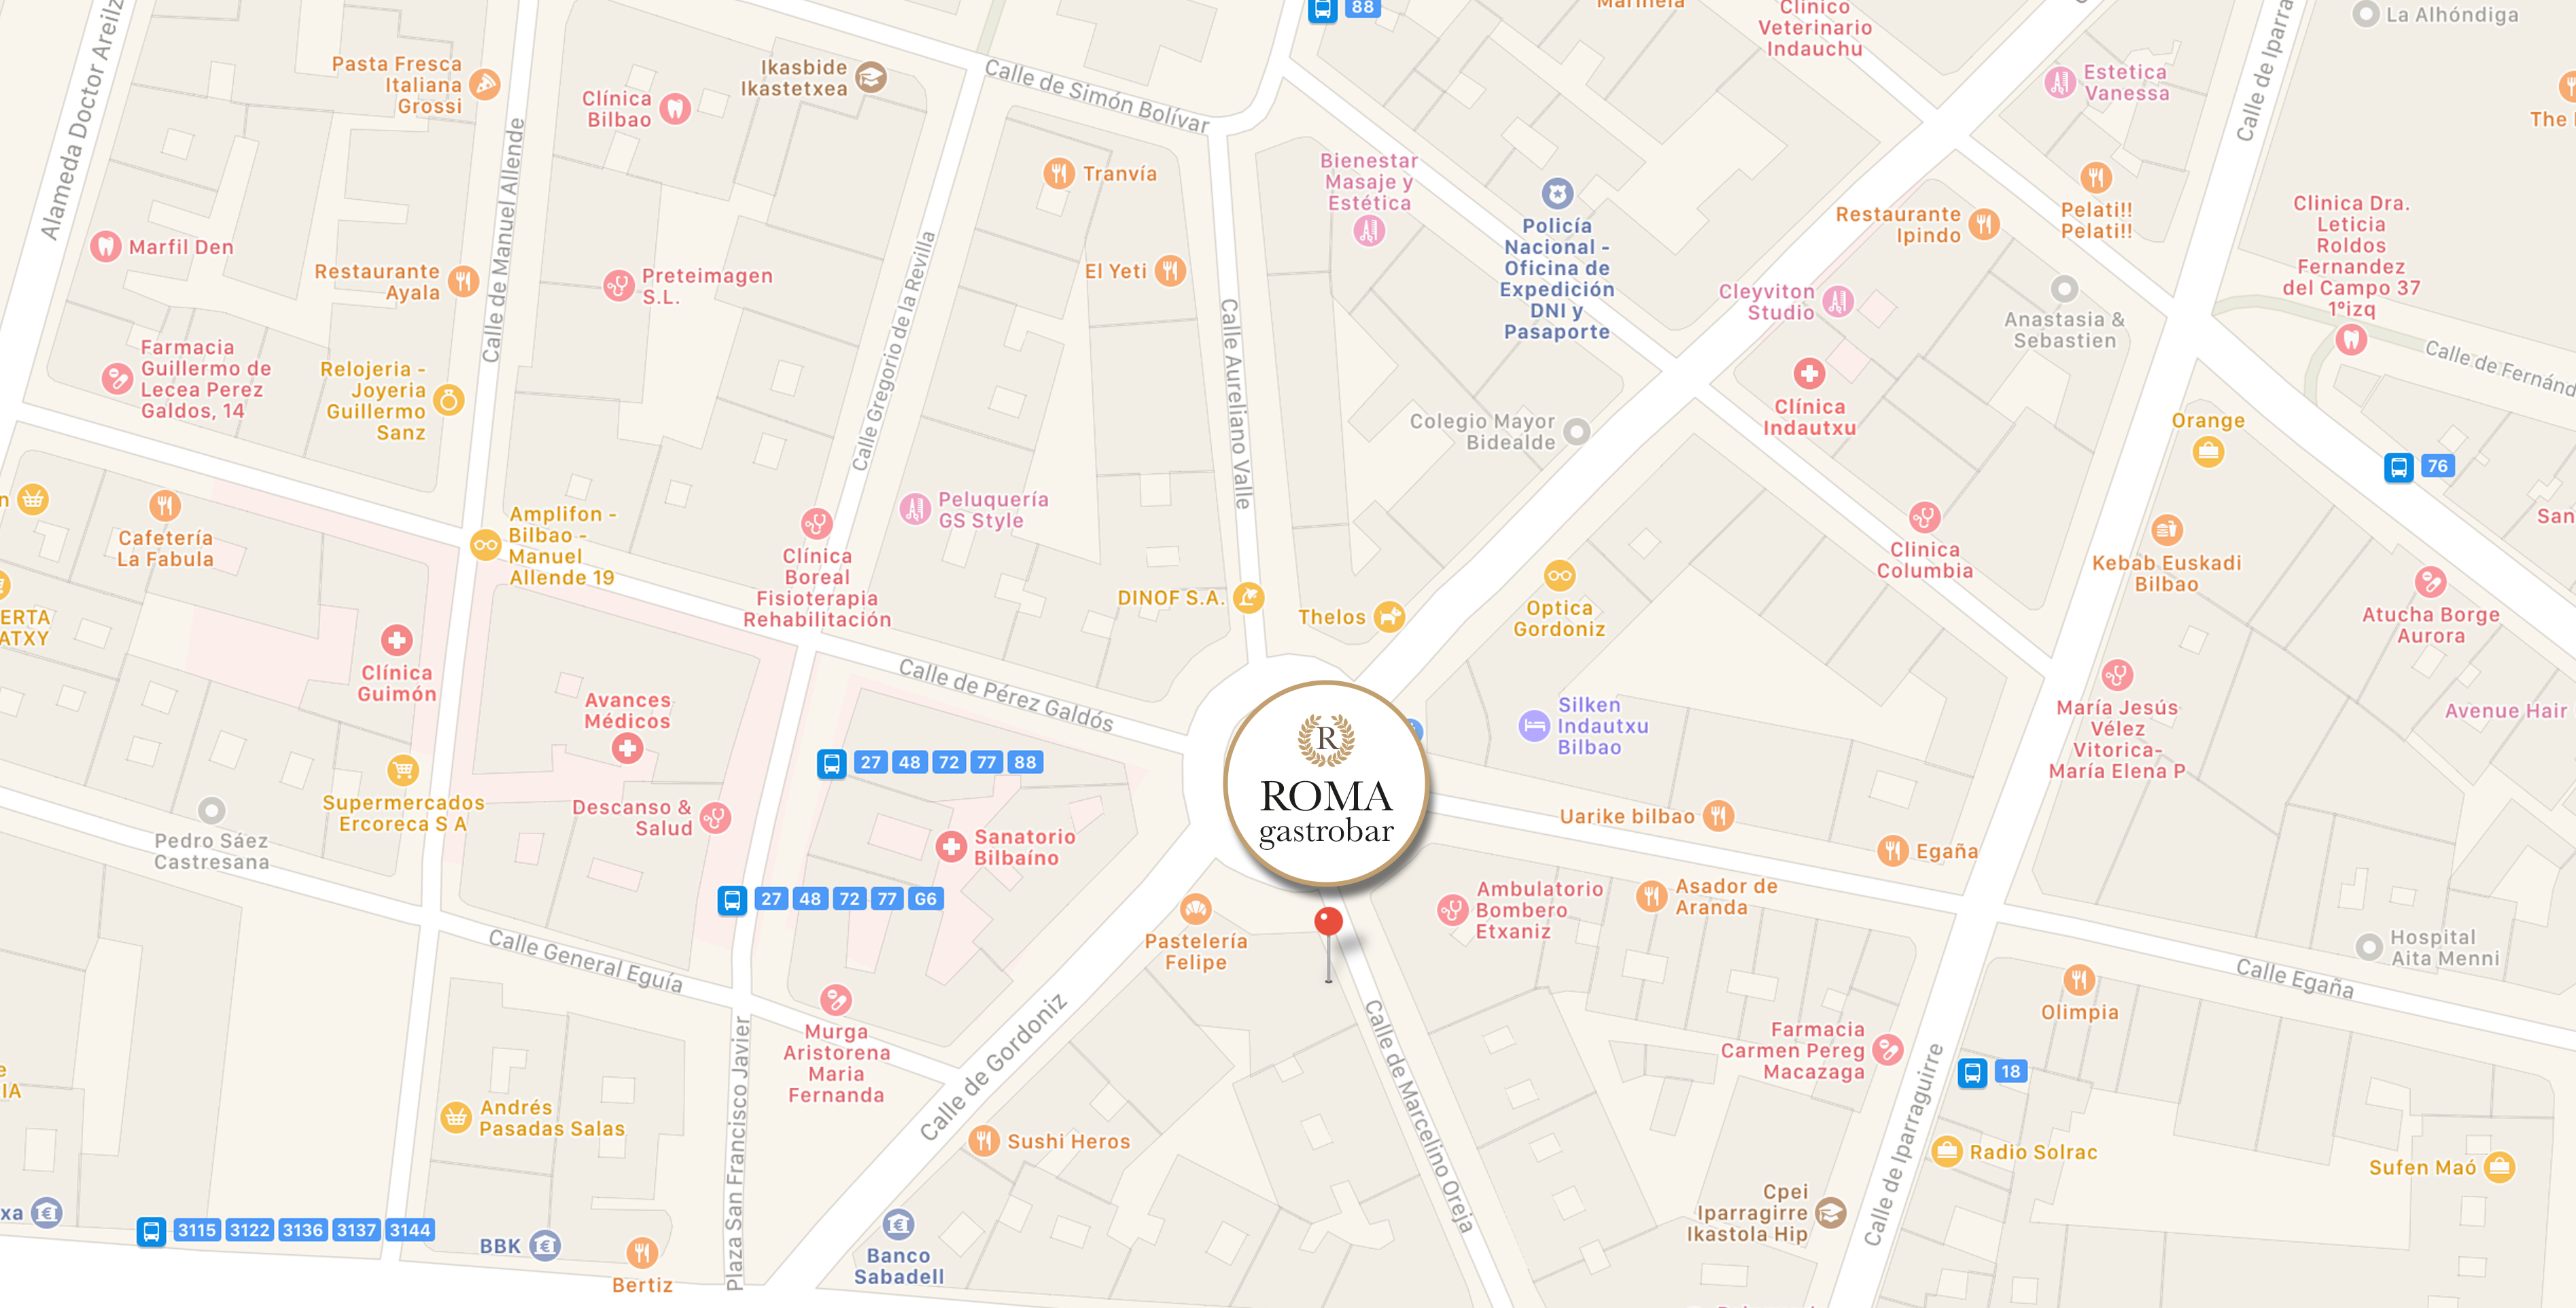 Mapa_Bilbao_Roma